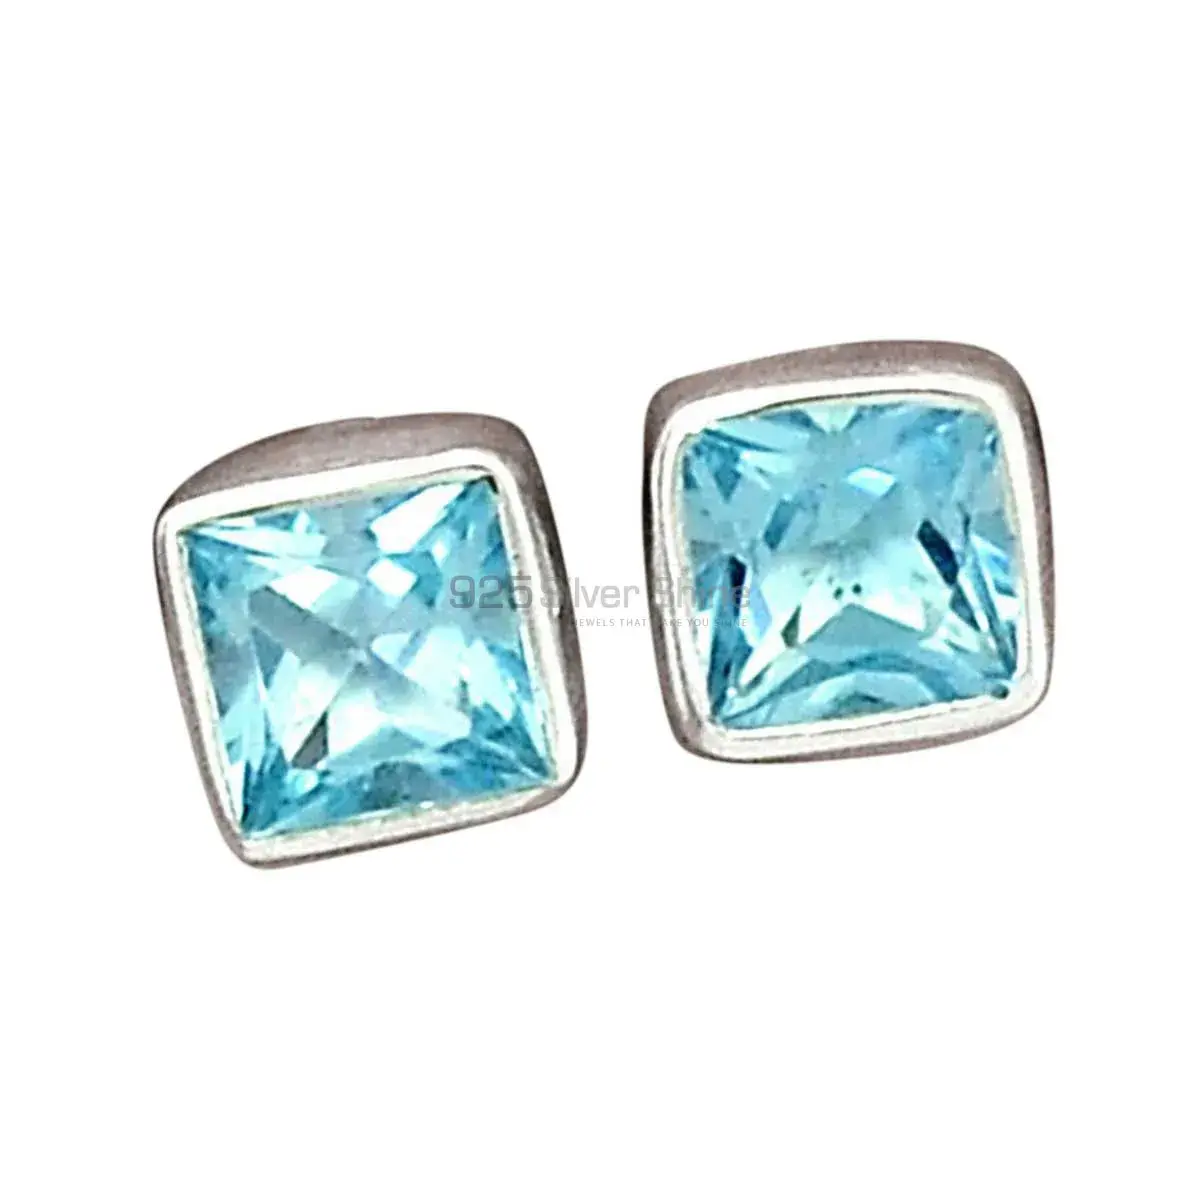 Wholesale 925 Sterling Silver Earrings In Genuine Blue Topaz Gemstone 925SE2761_10